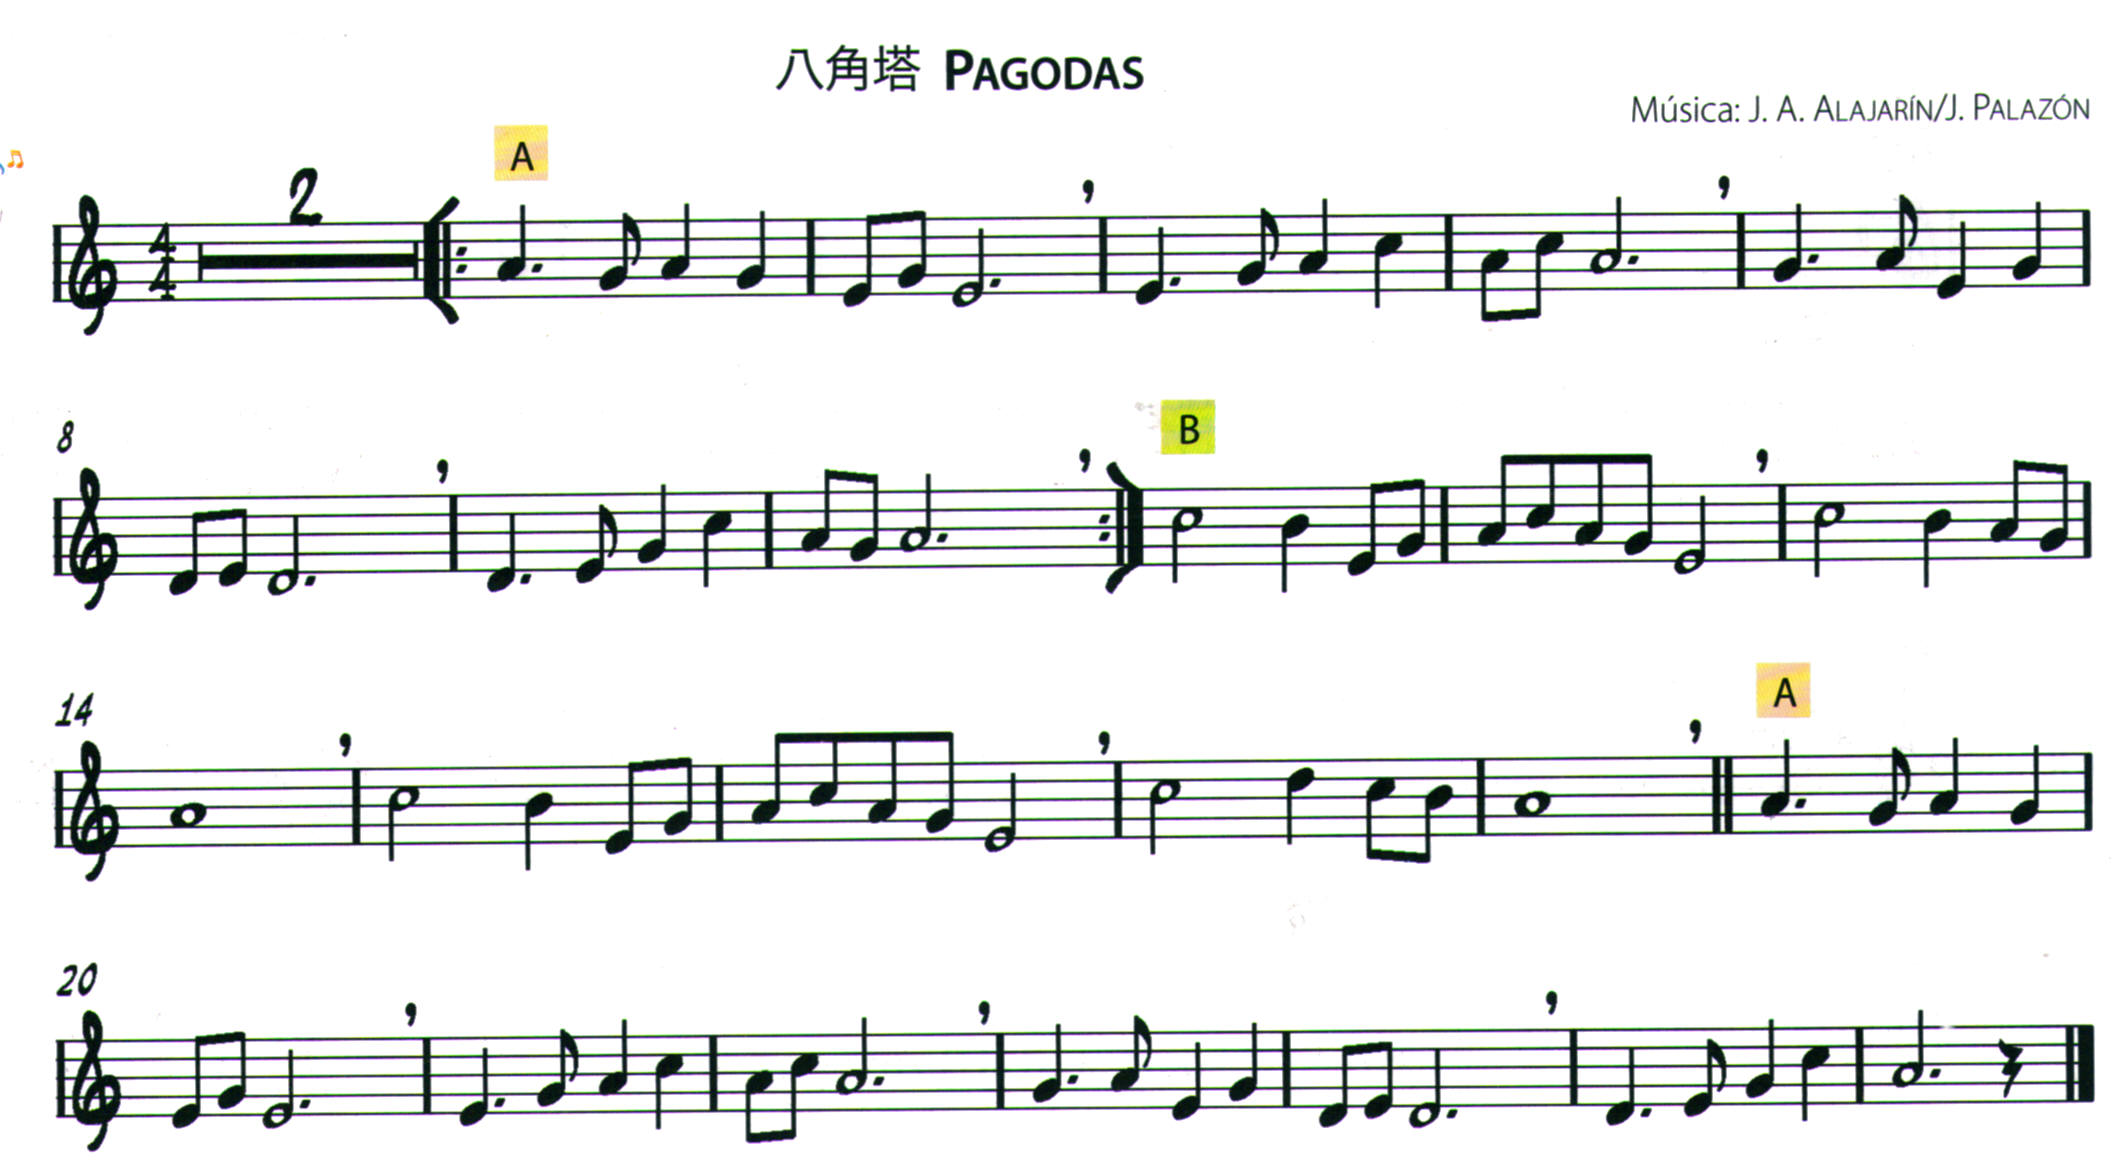 8. Música China; “Pagodas” – SARIOT